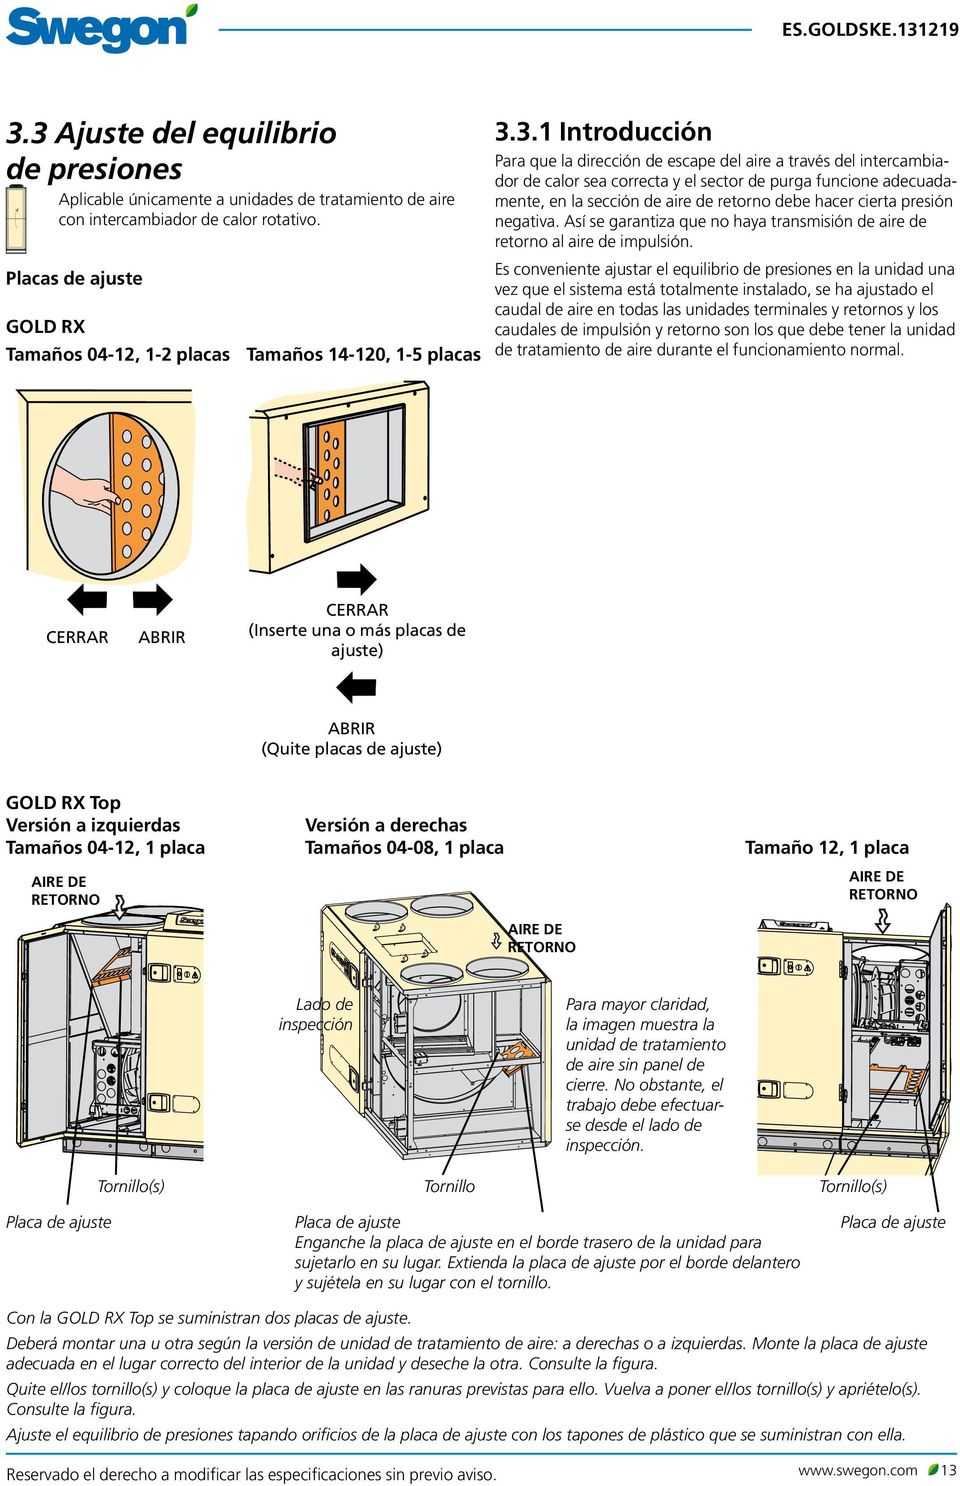 3.1 Introducción Para que la dirección de escape del aire a través del intercambiador de calor sea correcta y el sector de purga funcione adecuadamente, en la sección de aire de retorno debe hacer